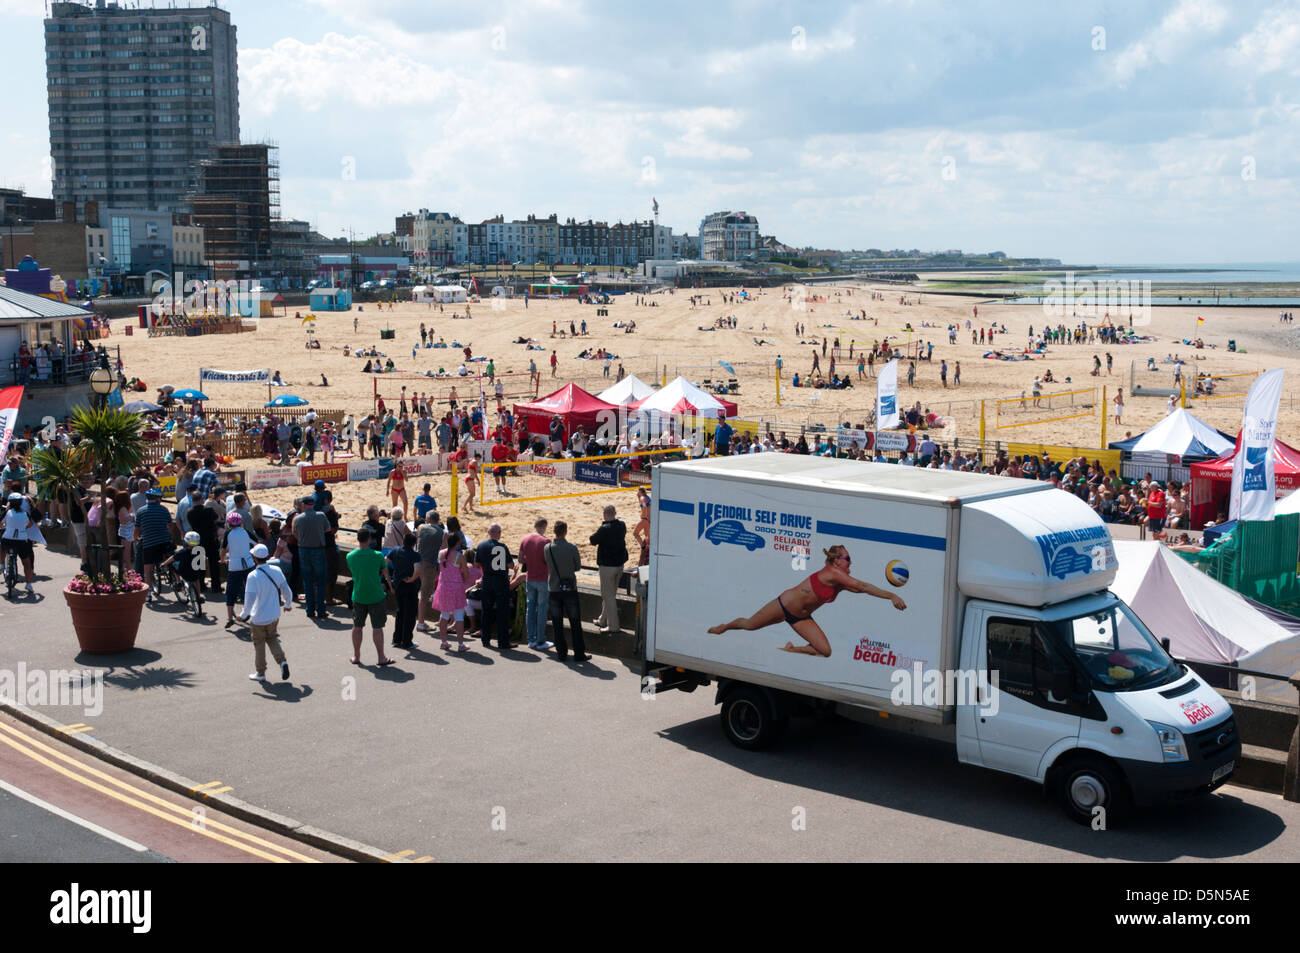 Ein Volleyball England Beach Tour van geparkt am Strand von Margate für Margate Beach-Volleyball Masters Championships. Stockfoto